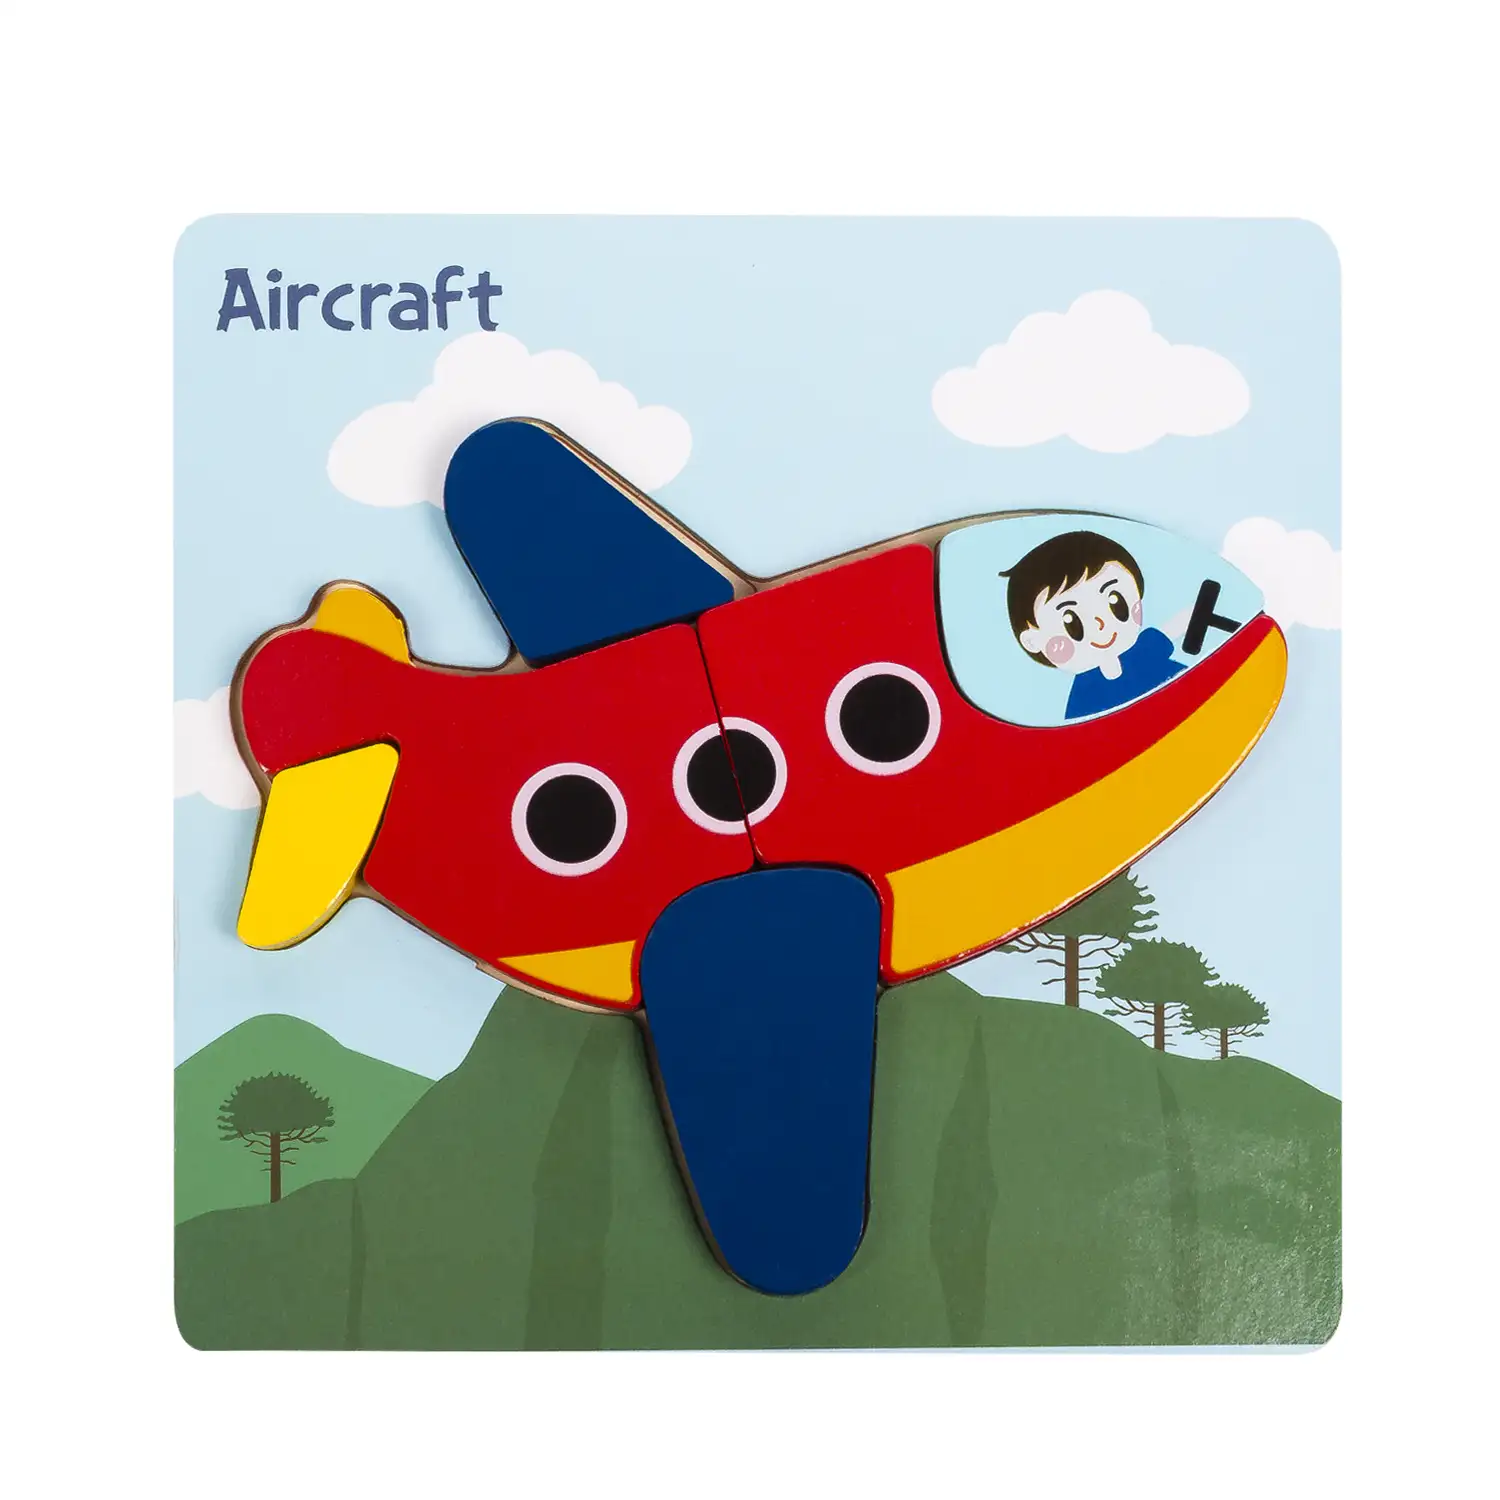 Puzle de madera para niños, de 6 piezas. Diseño avión.